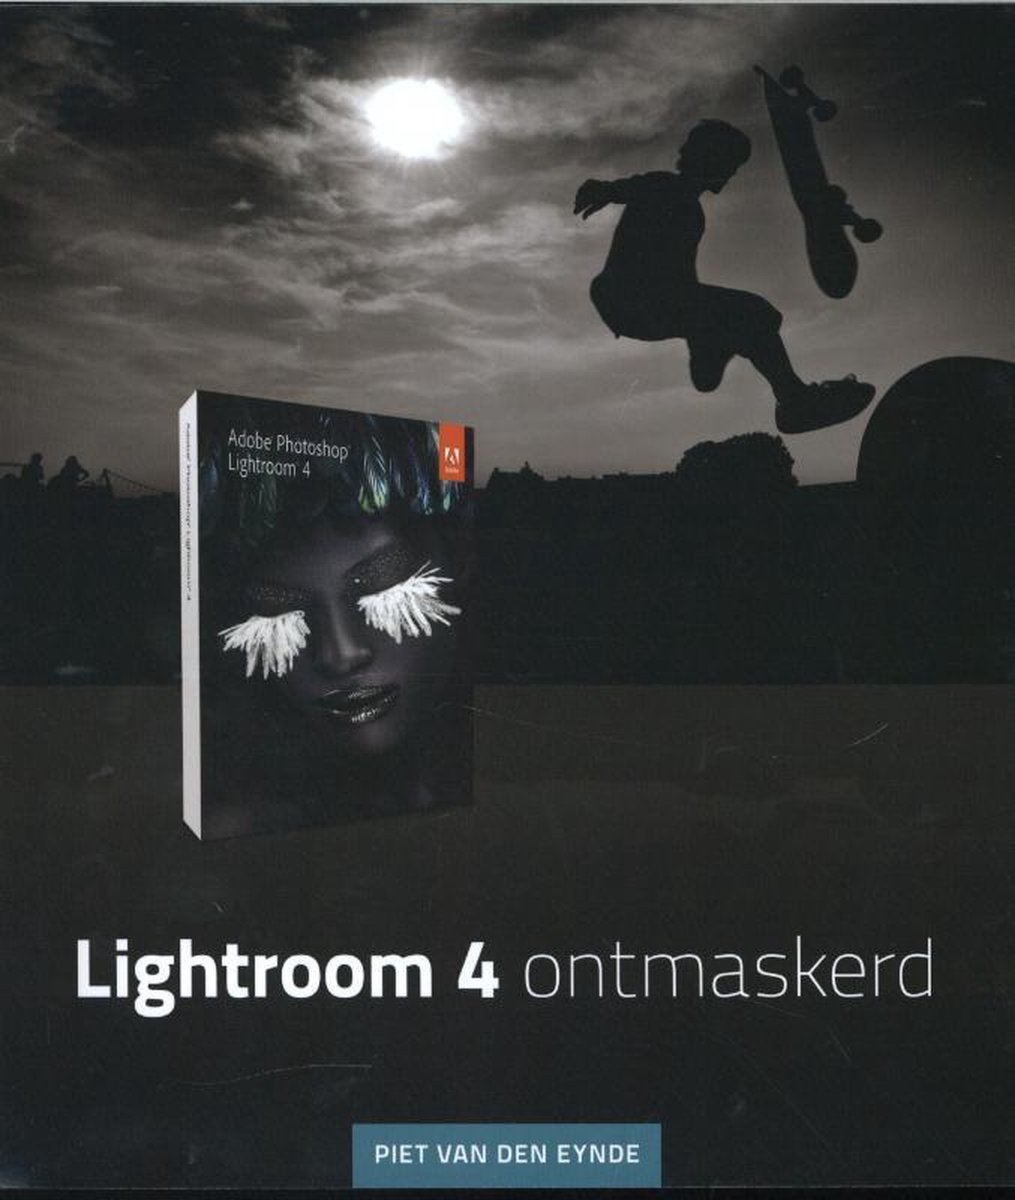 Bol Com Lightroom 4 Ontmaskerd Piet Van Den Eynde Boeken